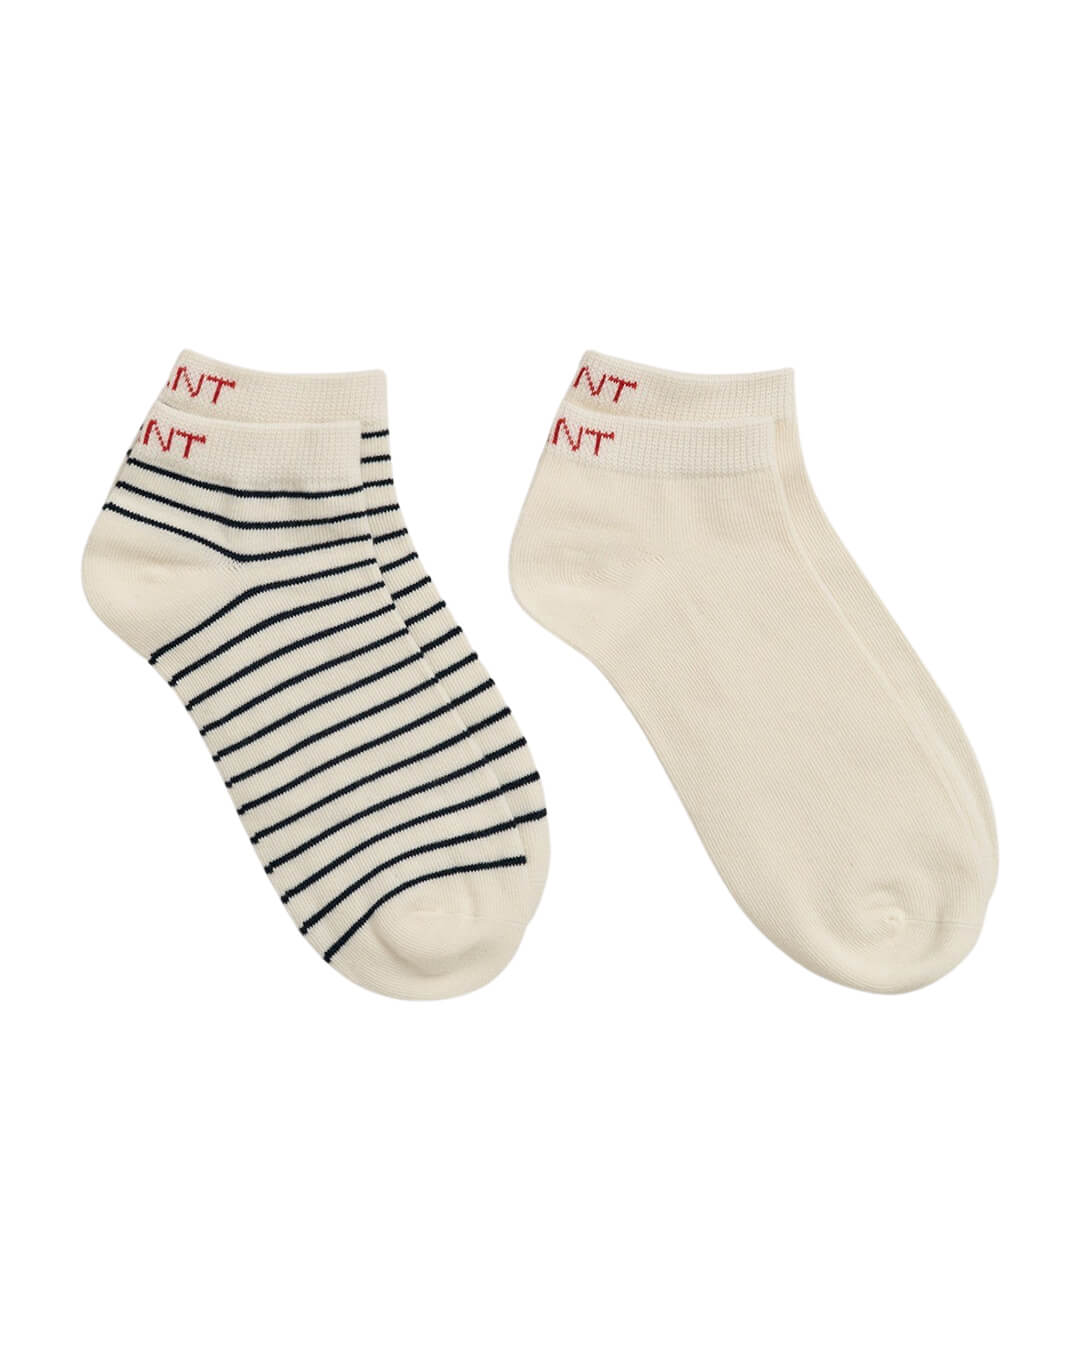 Gant Socks Gant White 2-Pack Breton Stripe Ankle Socks